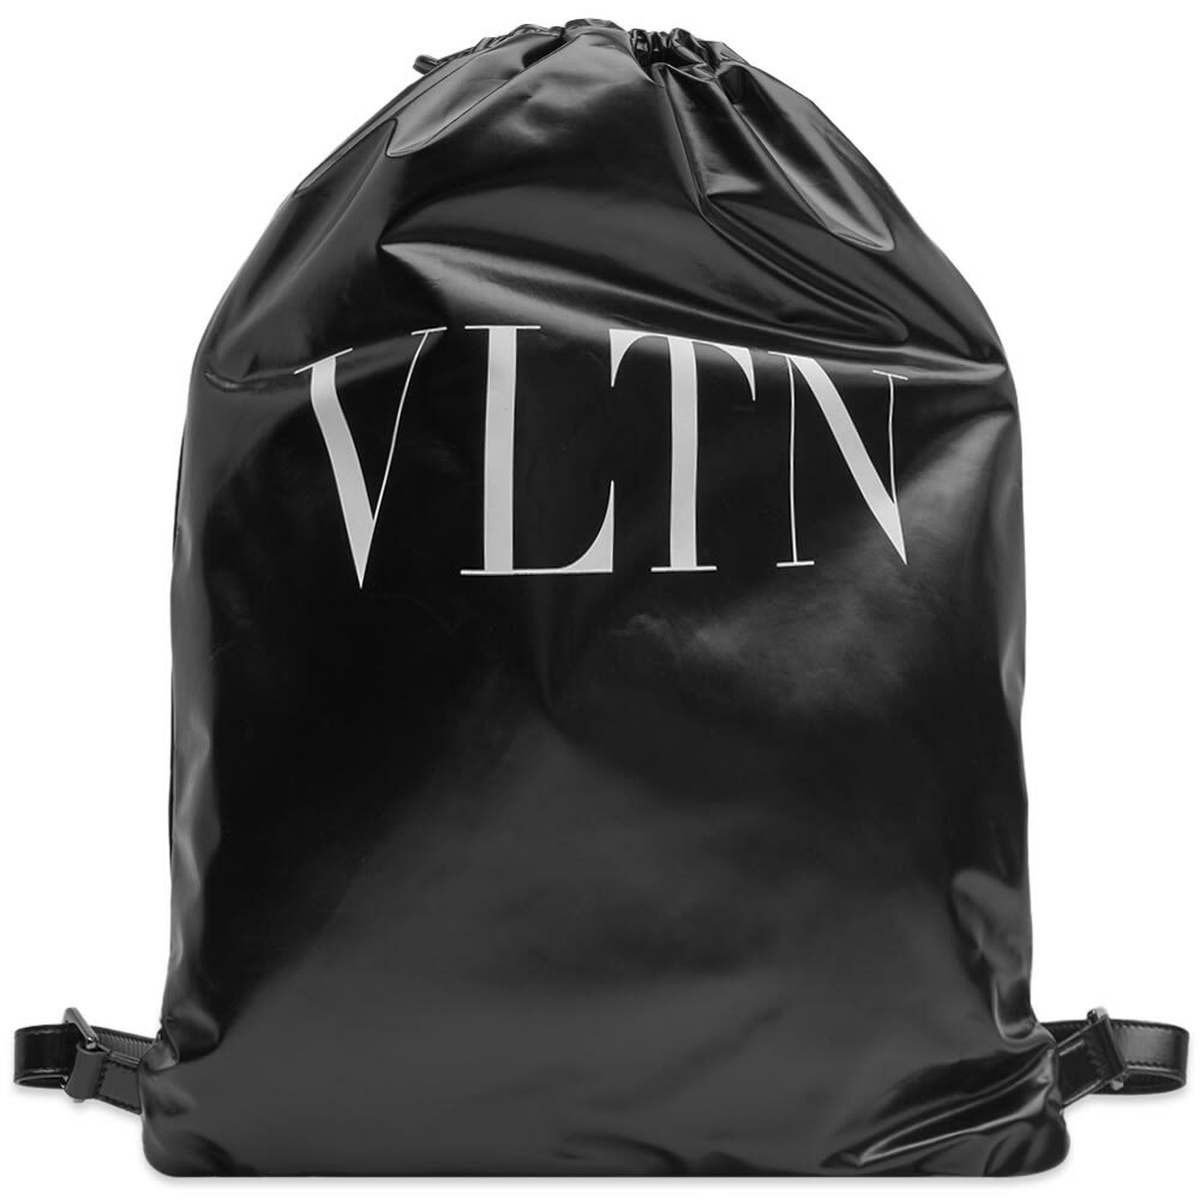 Valentino Men's VLTN Soft Light Backpack in Black/White Valentino